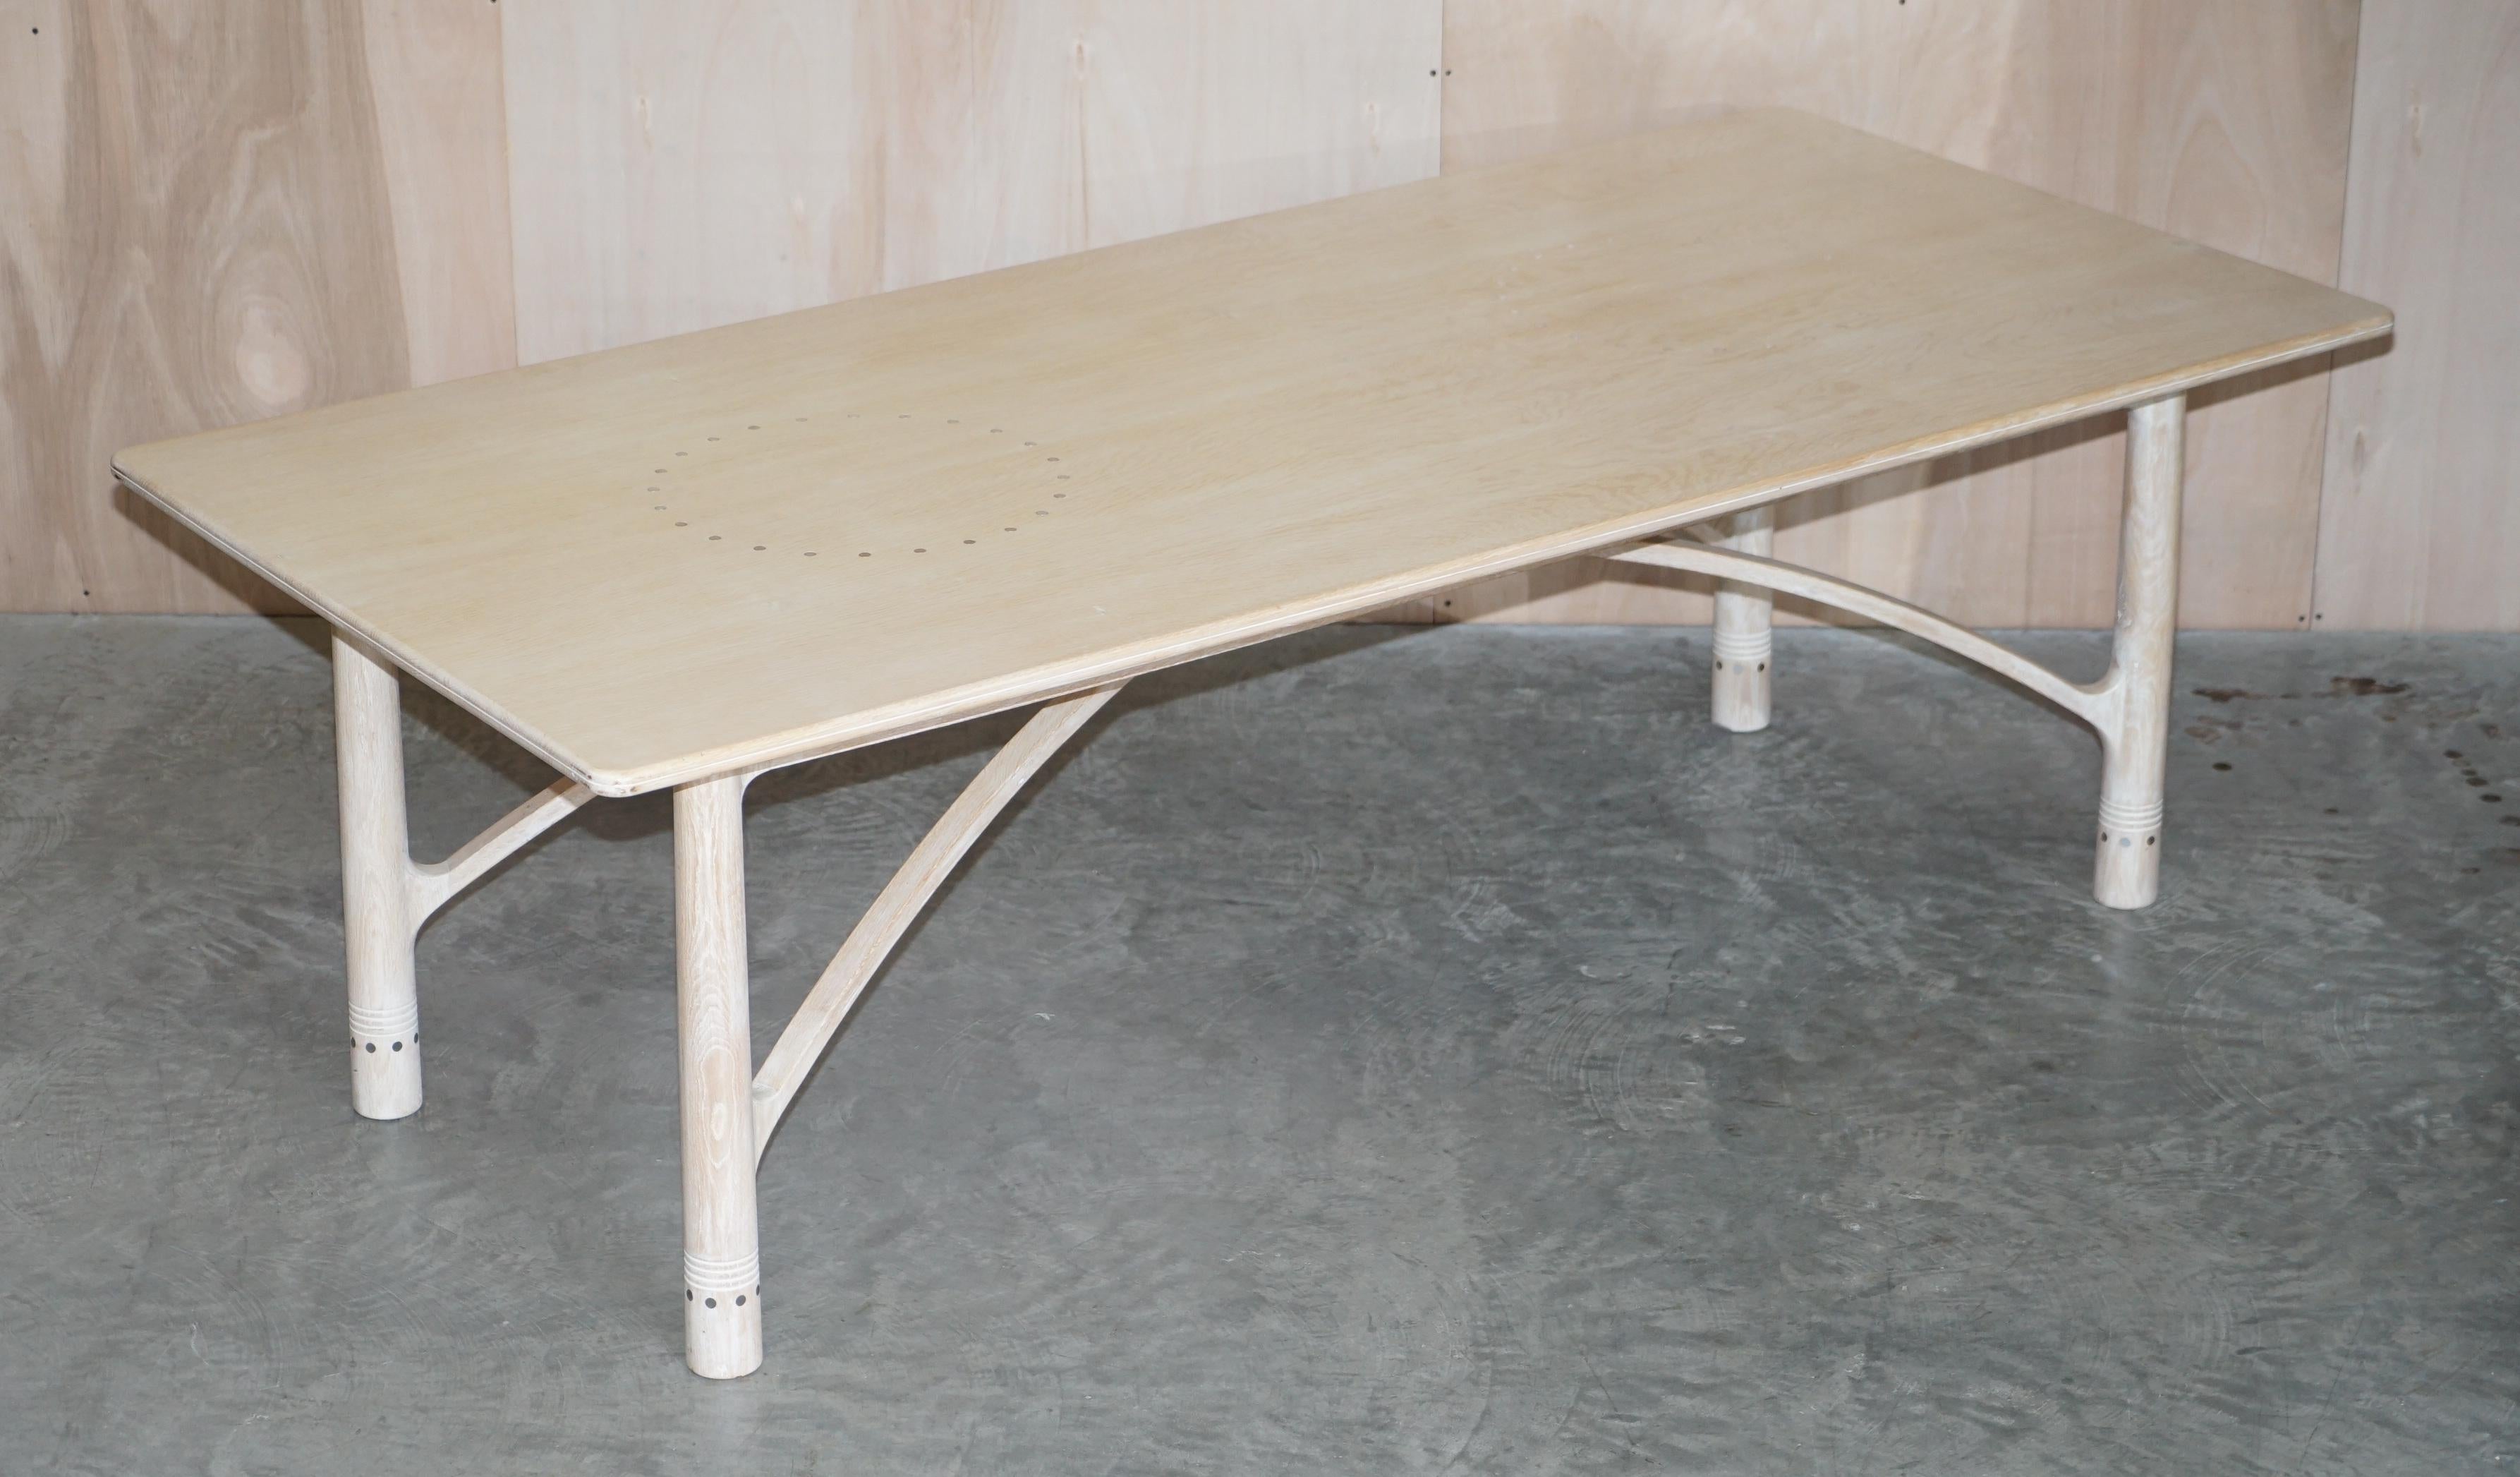 Siamo lieti di offrire questo squisito tavolo da pranzo di David Gregson, realizzato a mano in Inghilterra, timbrato e datato, in Oak Oak Oak con intarsi in peltro e otto sedie.

Una suite di bell'aspetto e ben fatta; se cerchi su Google mobili di